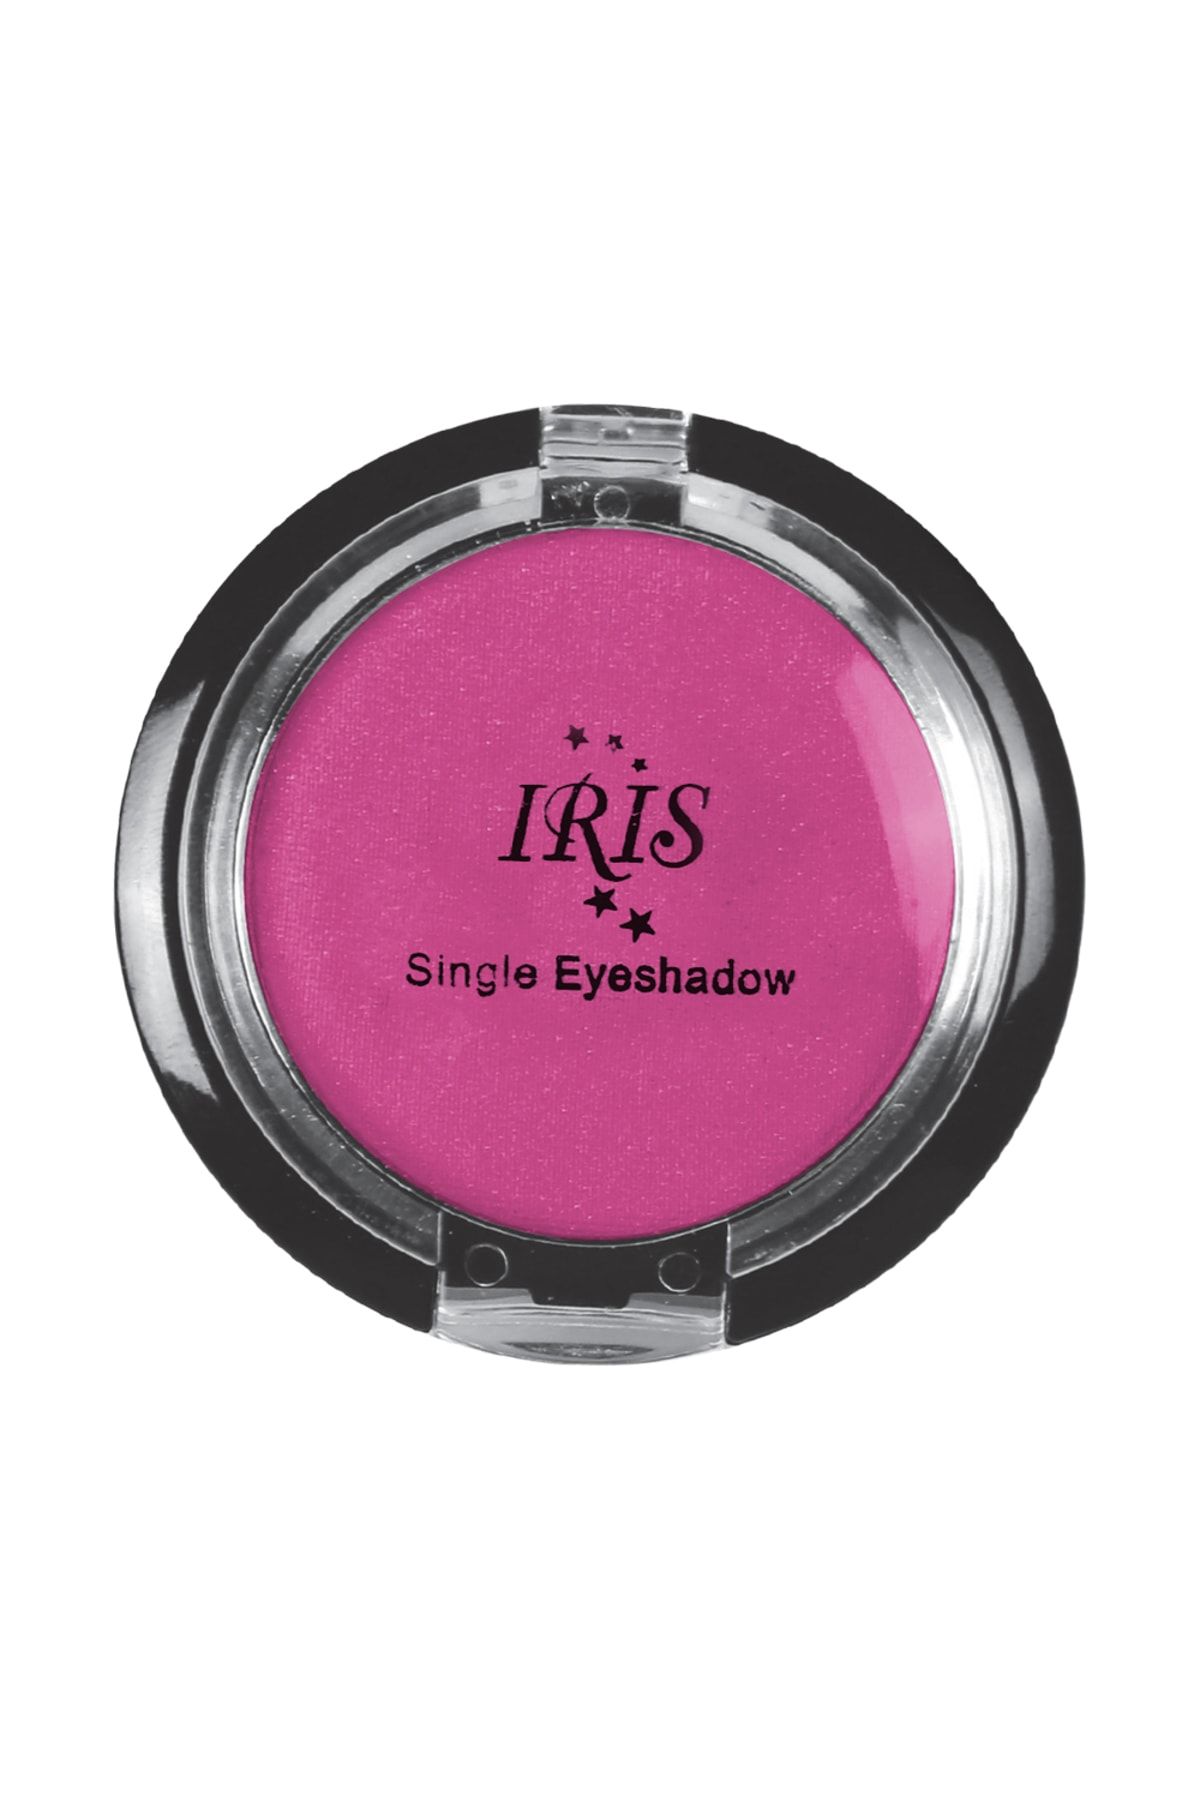 IRIS Göz Farı - Single Eyeshadow 011 8699195992782